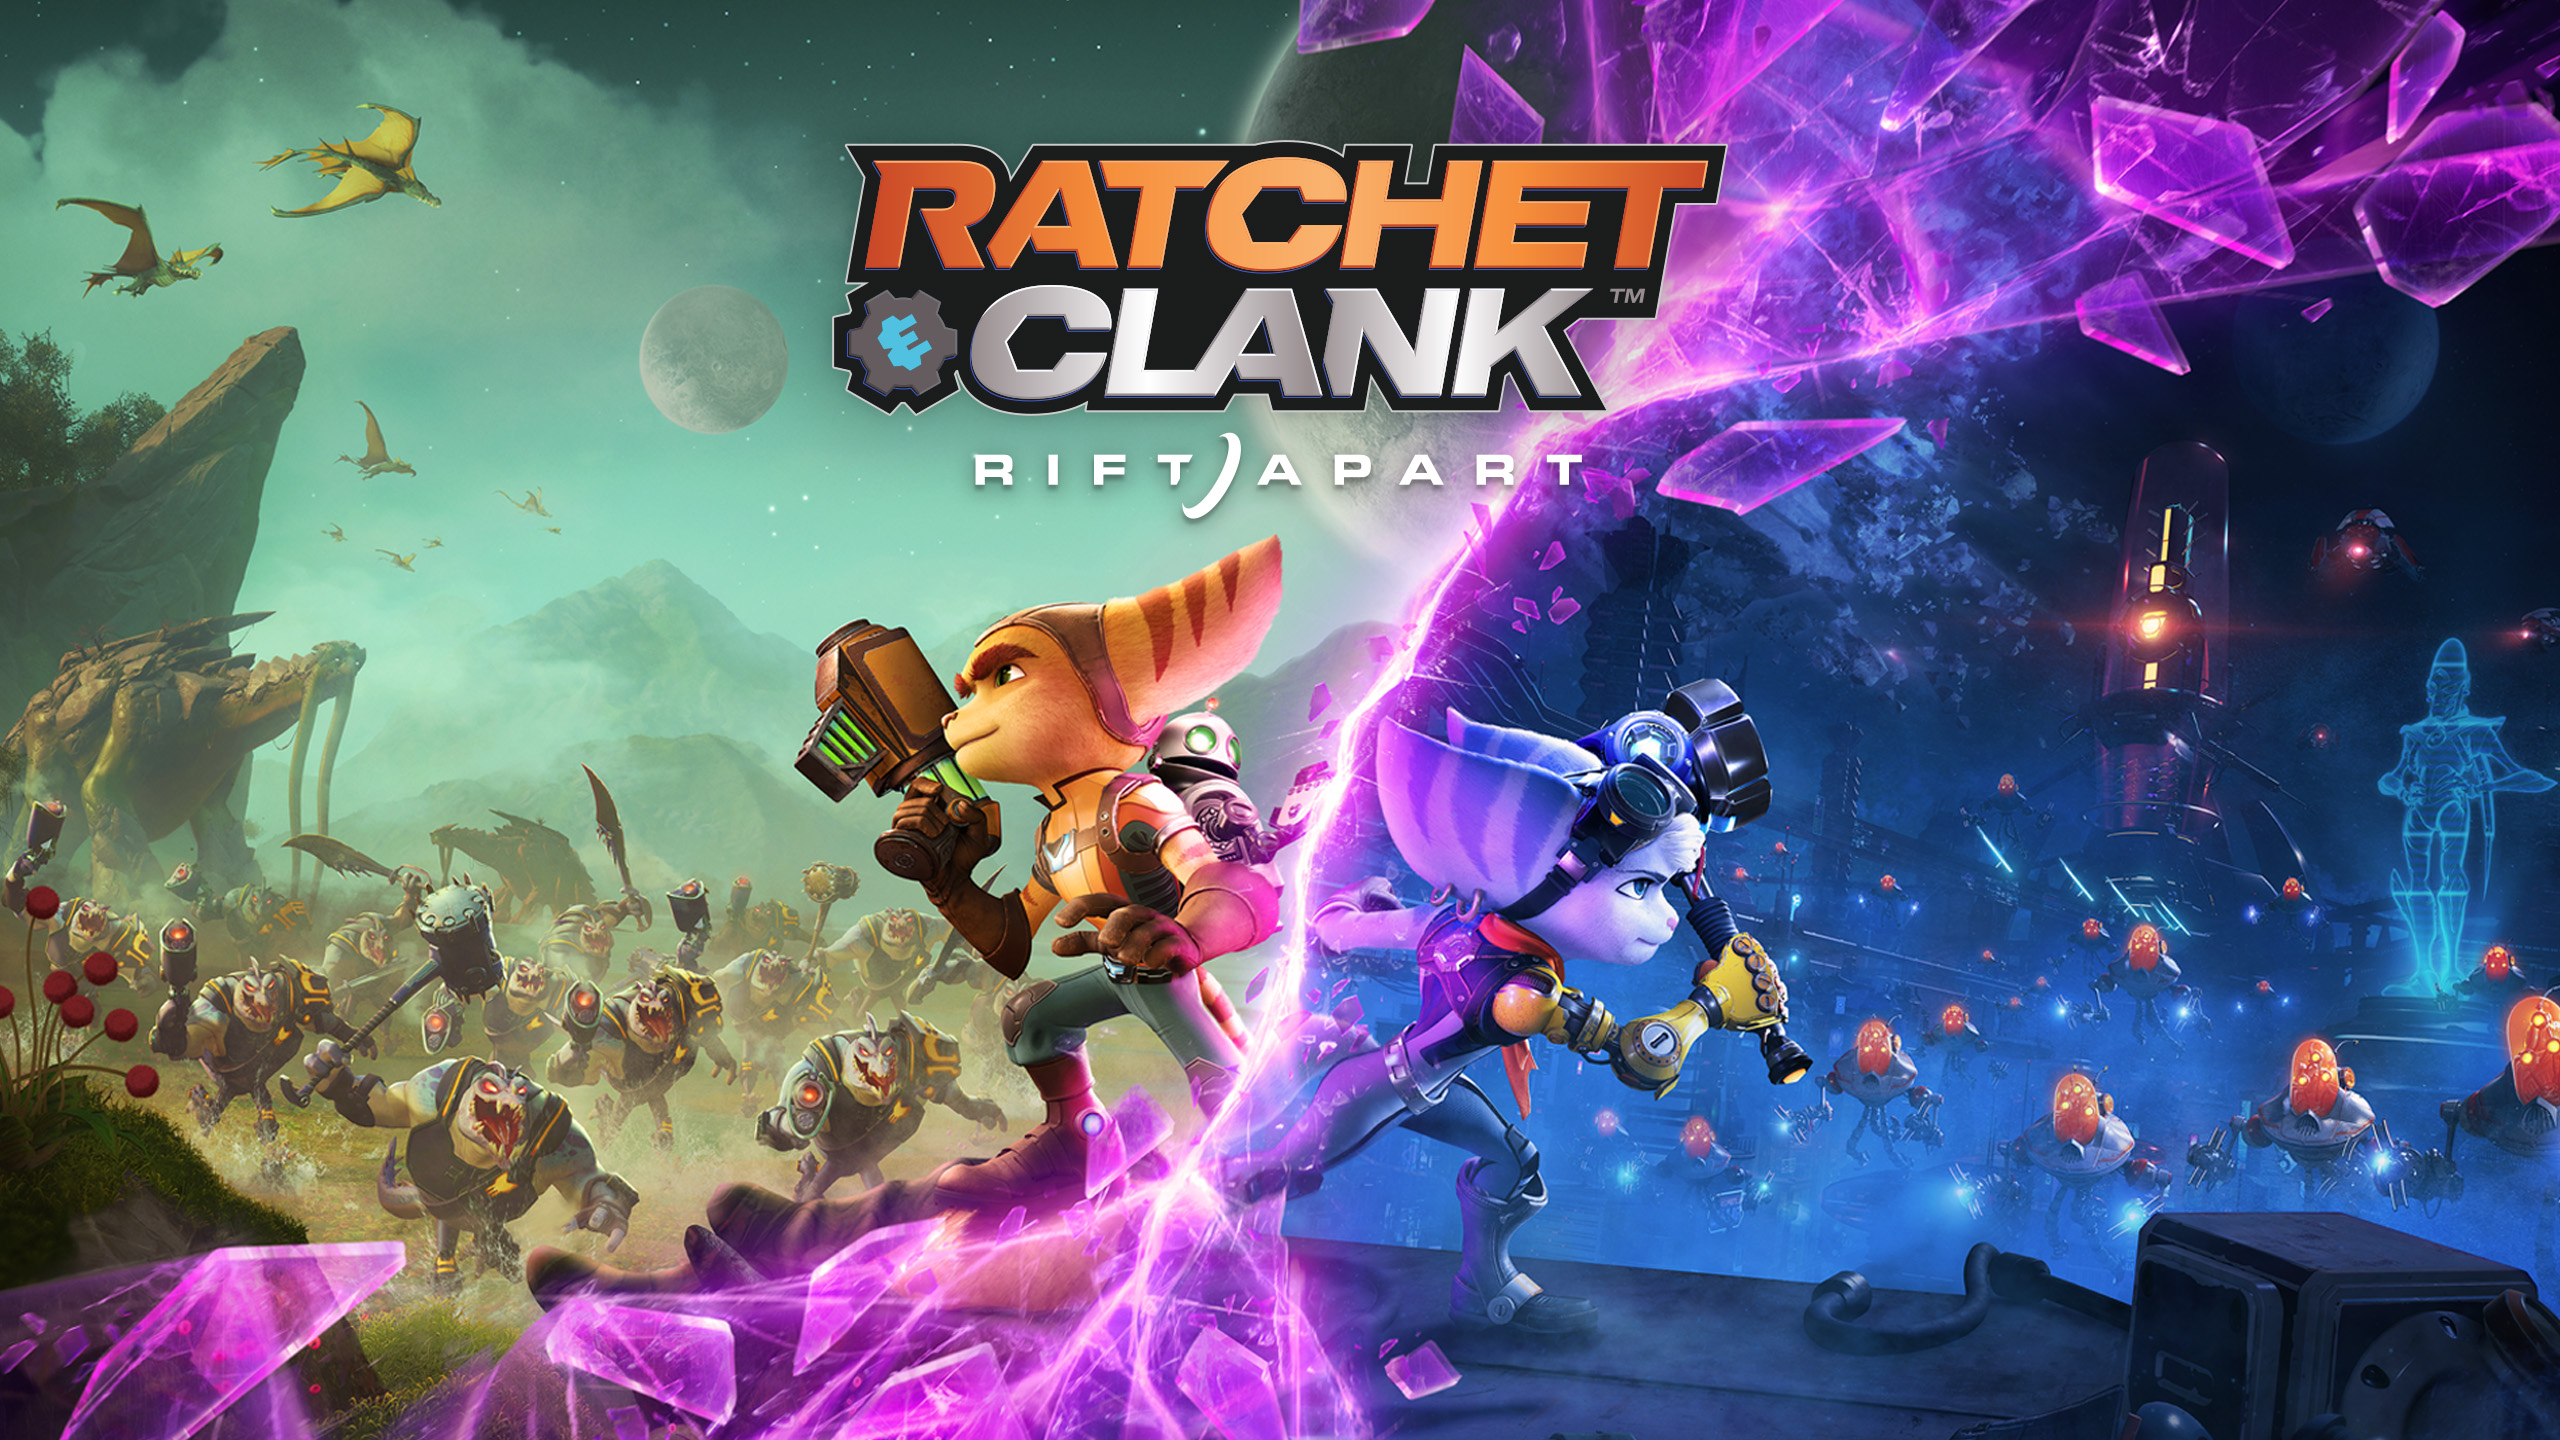 Ratchet & Clank: Rift Apart ИГРОМУЛЬФИЛЬМ ►#4 Прохождение без комментариев (Русская озвучка)